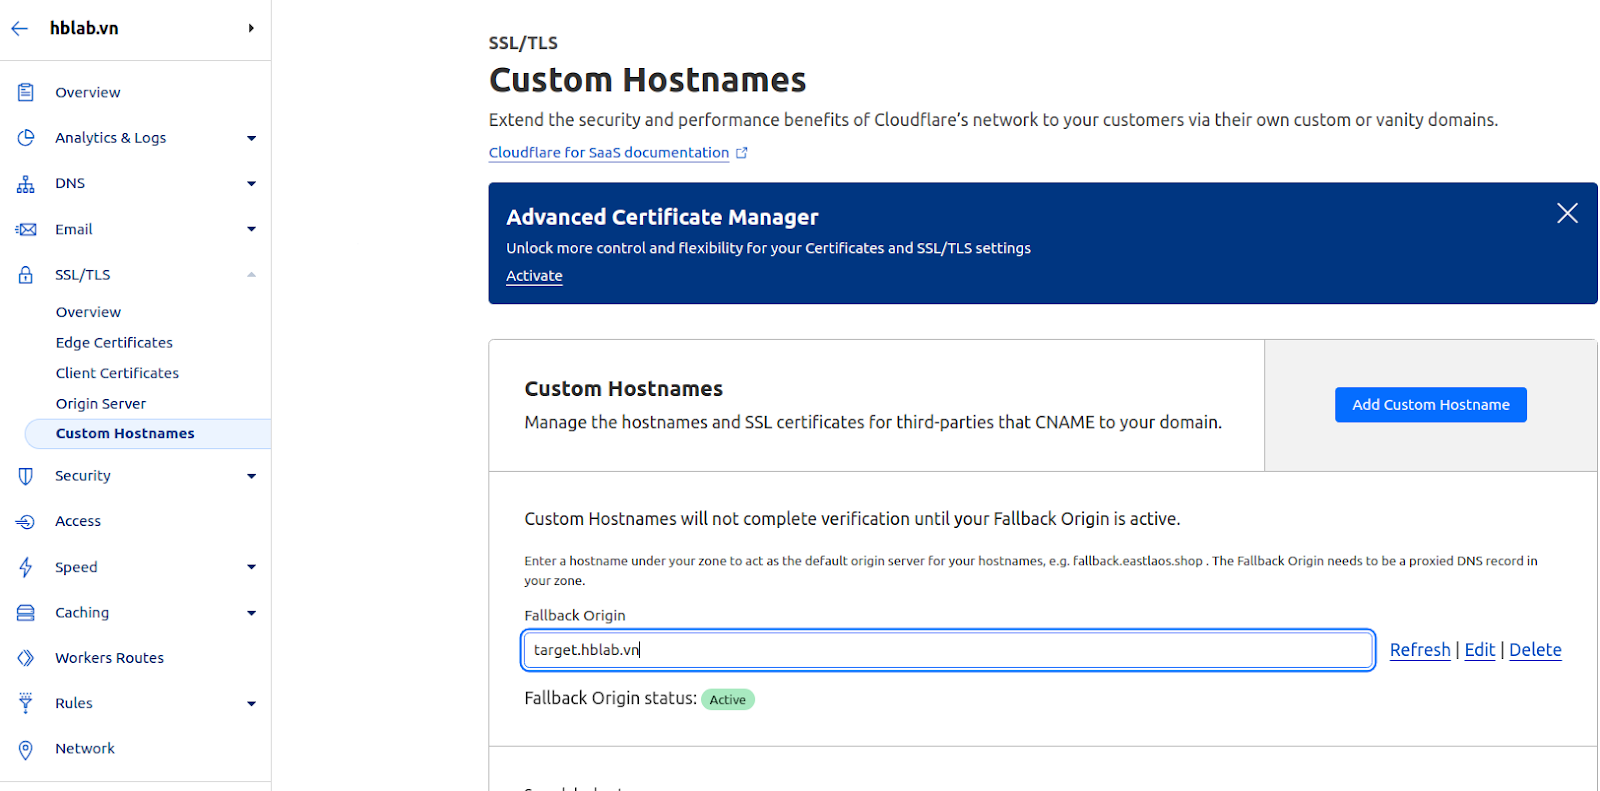 Custom Hostnames